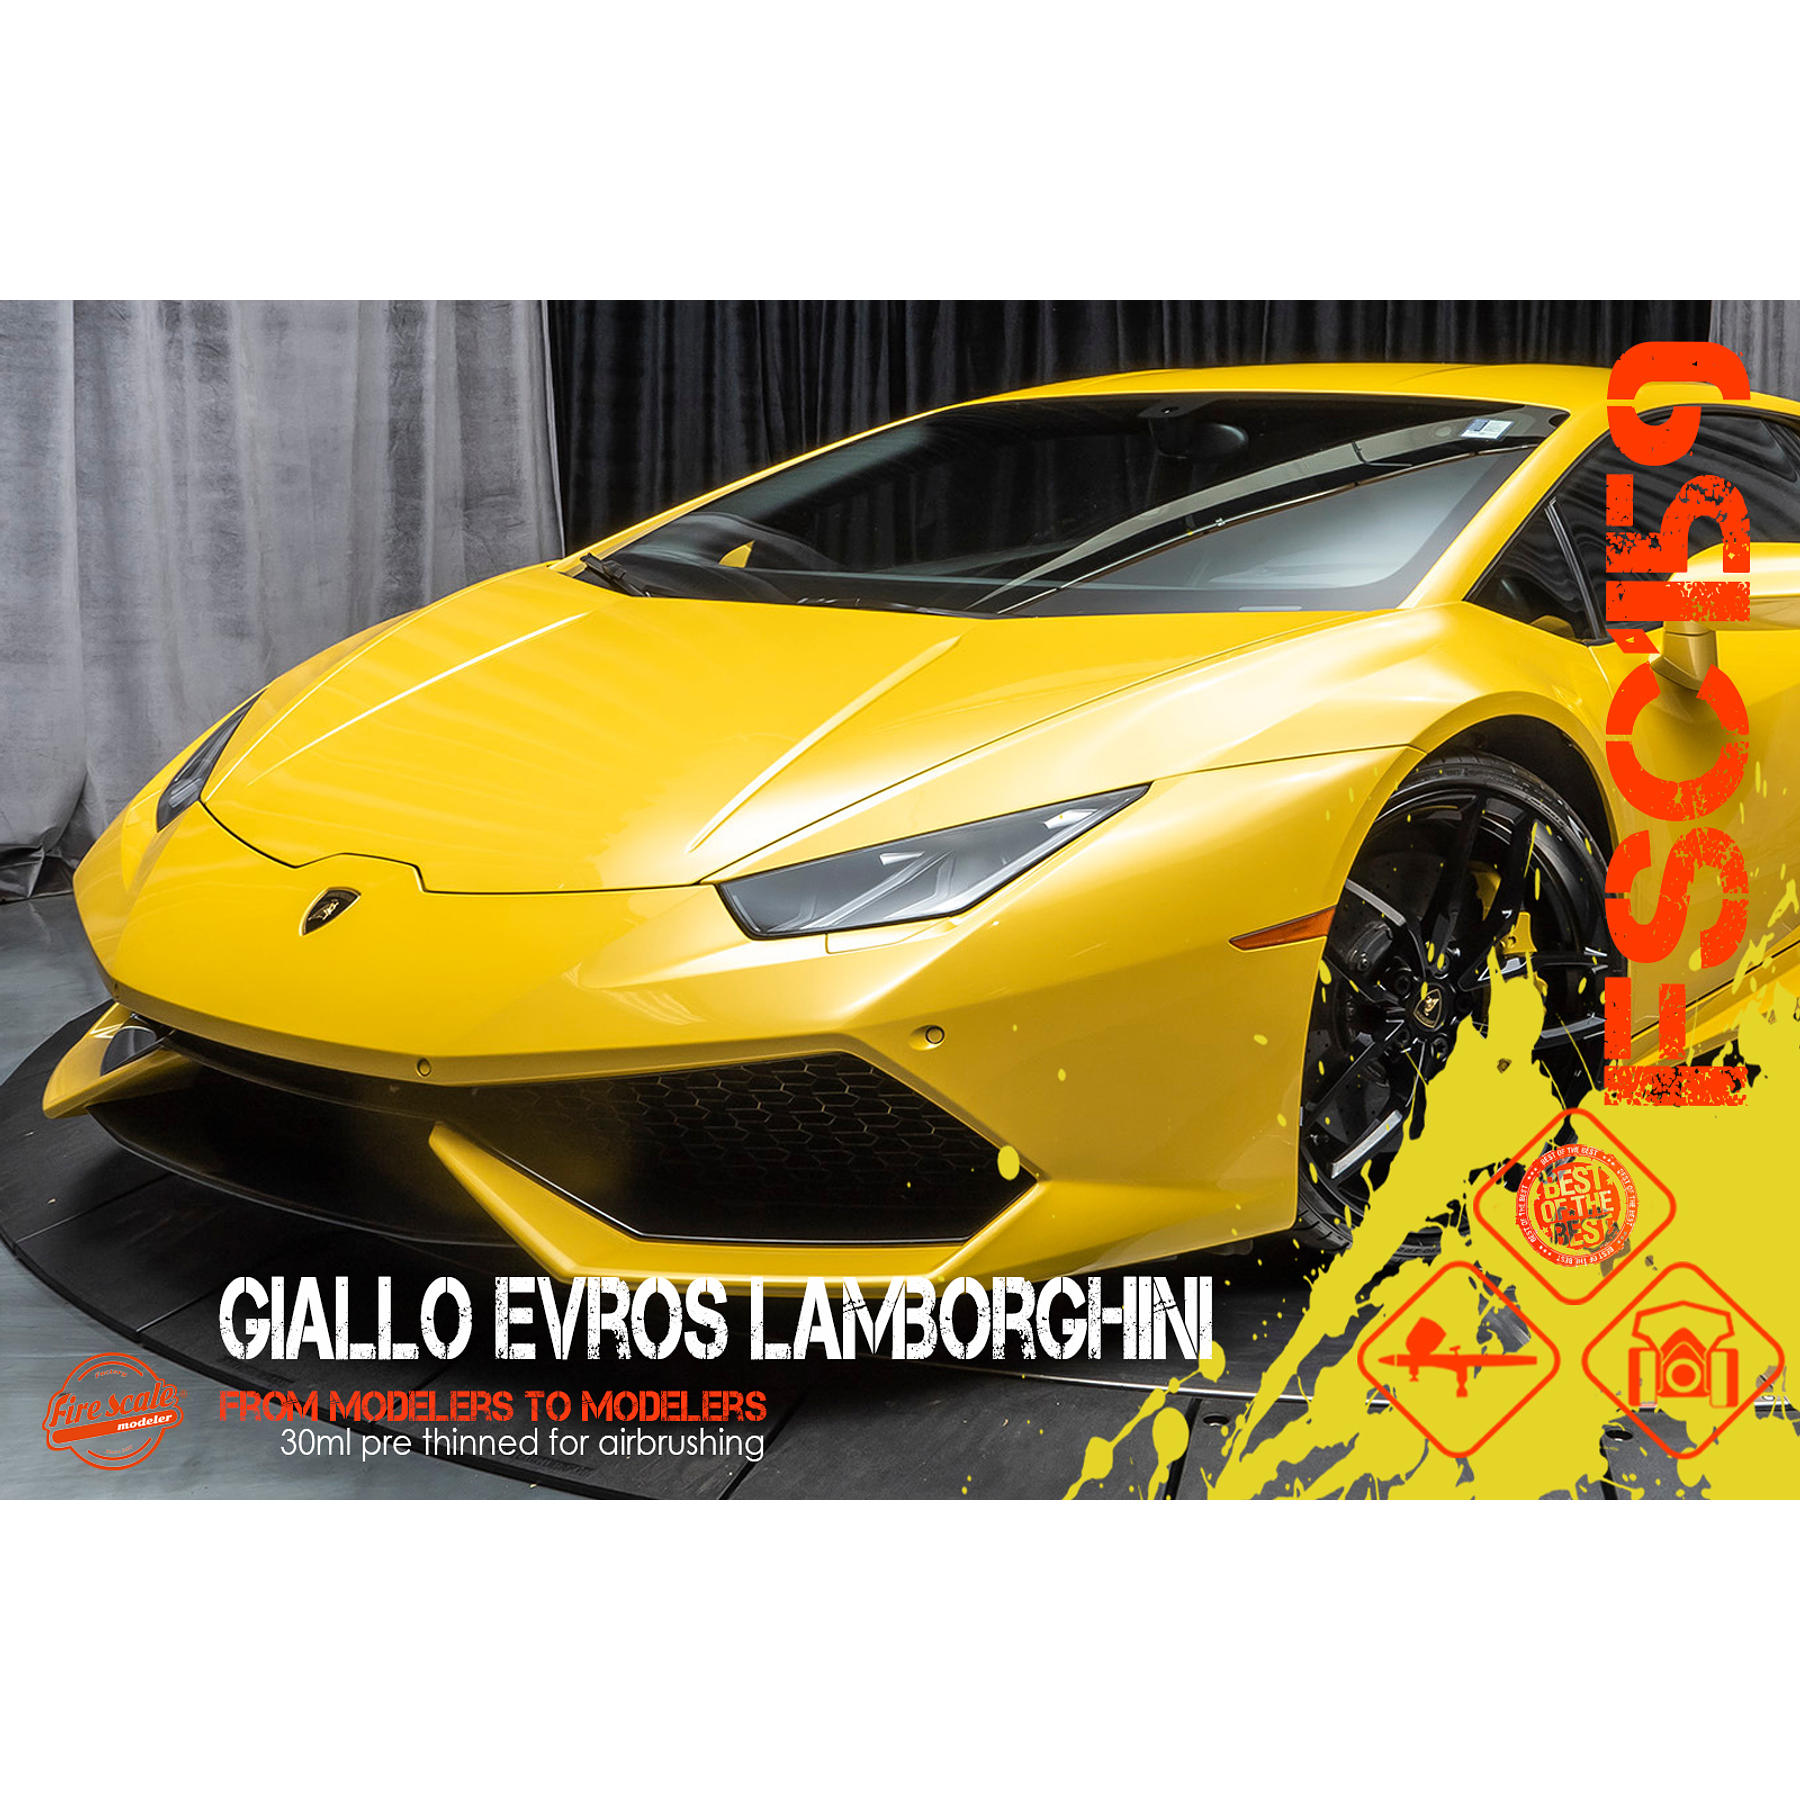 Giallo Evros Lamborghini